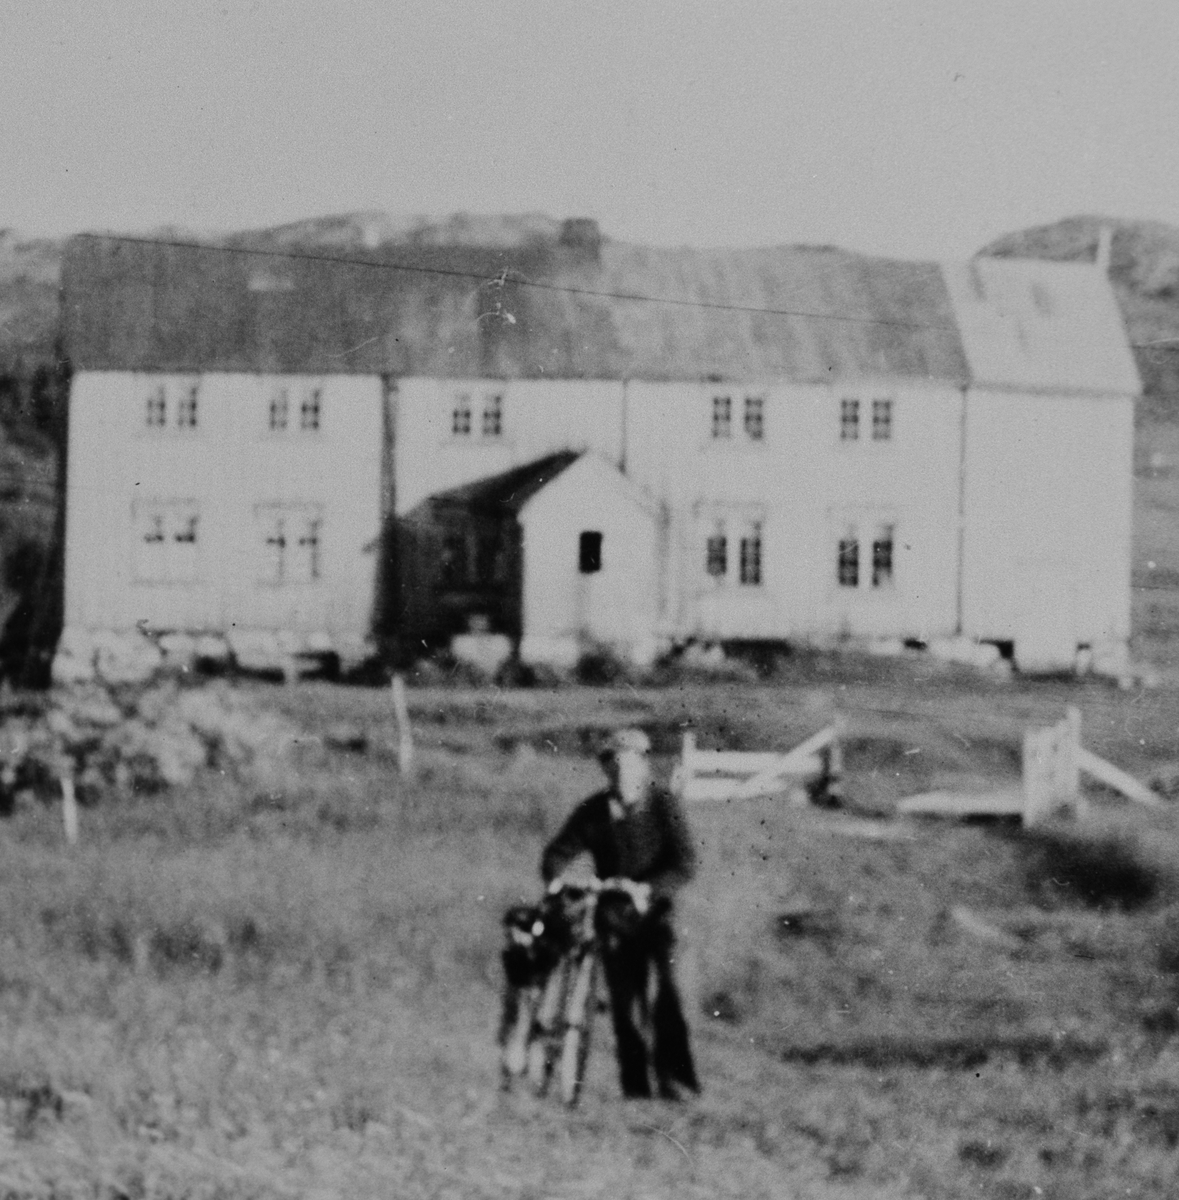 Mann står ved siden av en sykkel, bygning i bakgrunnen.